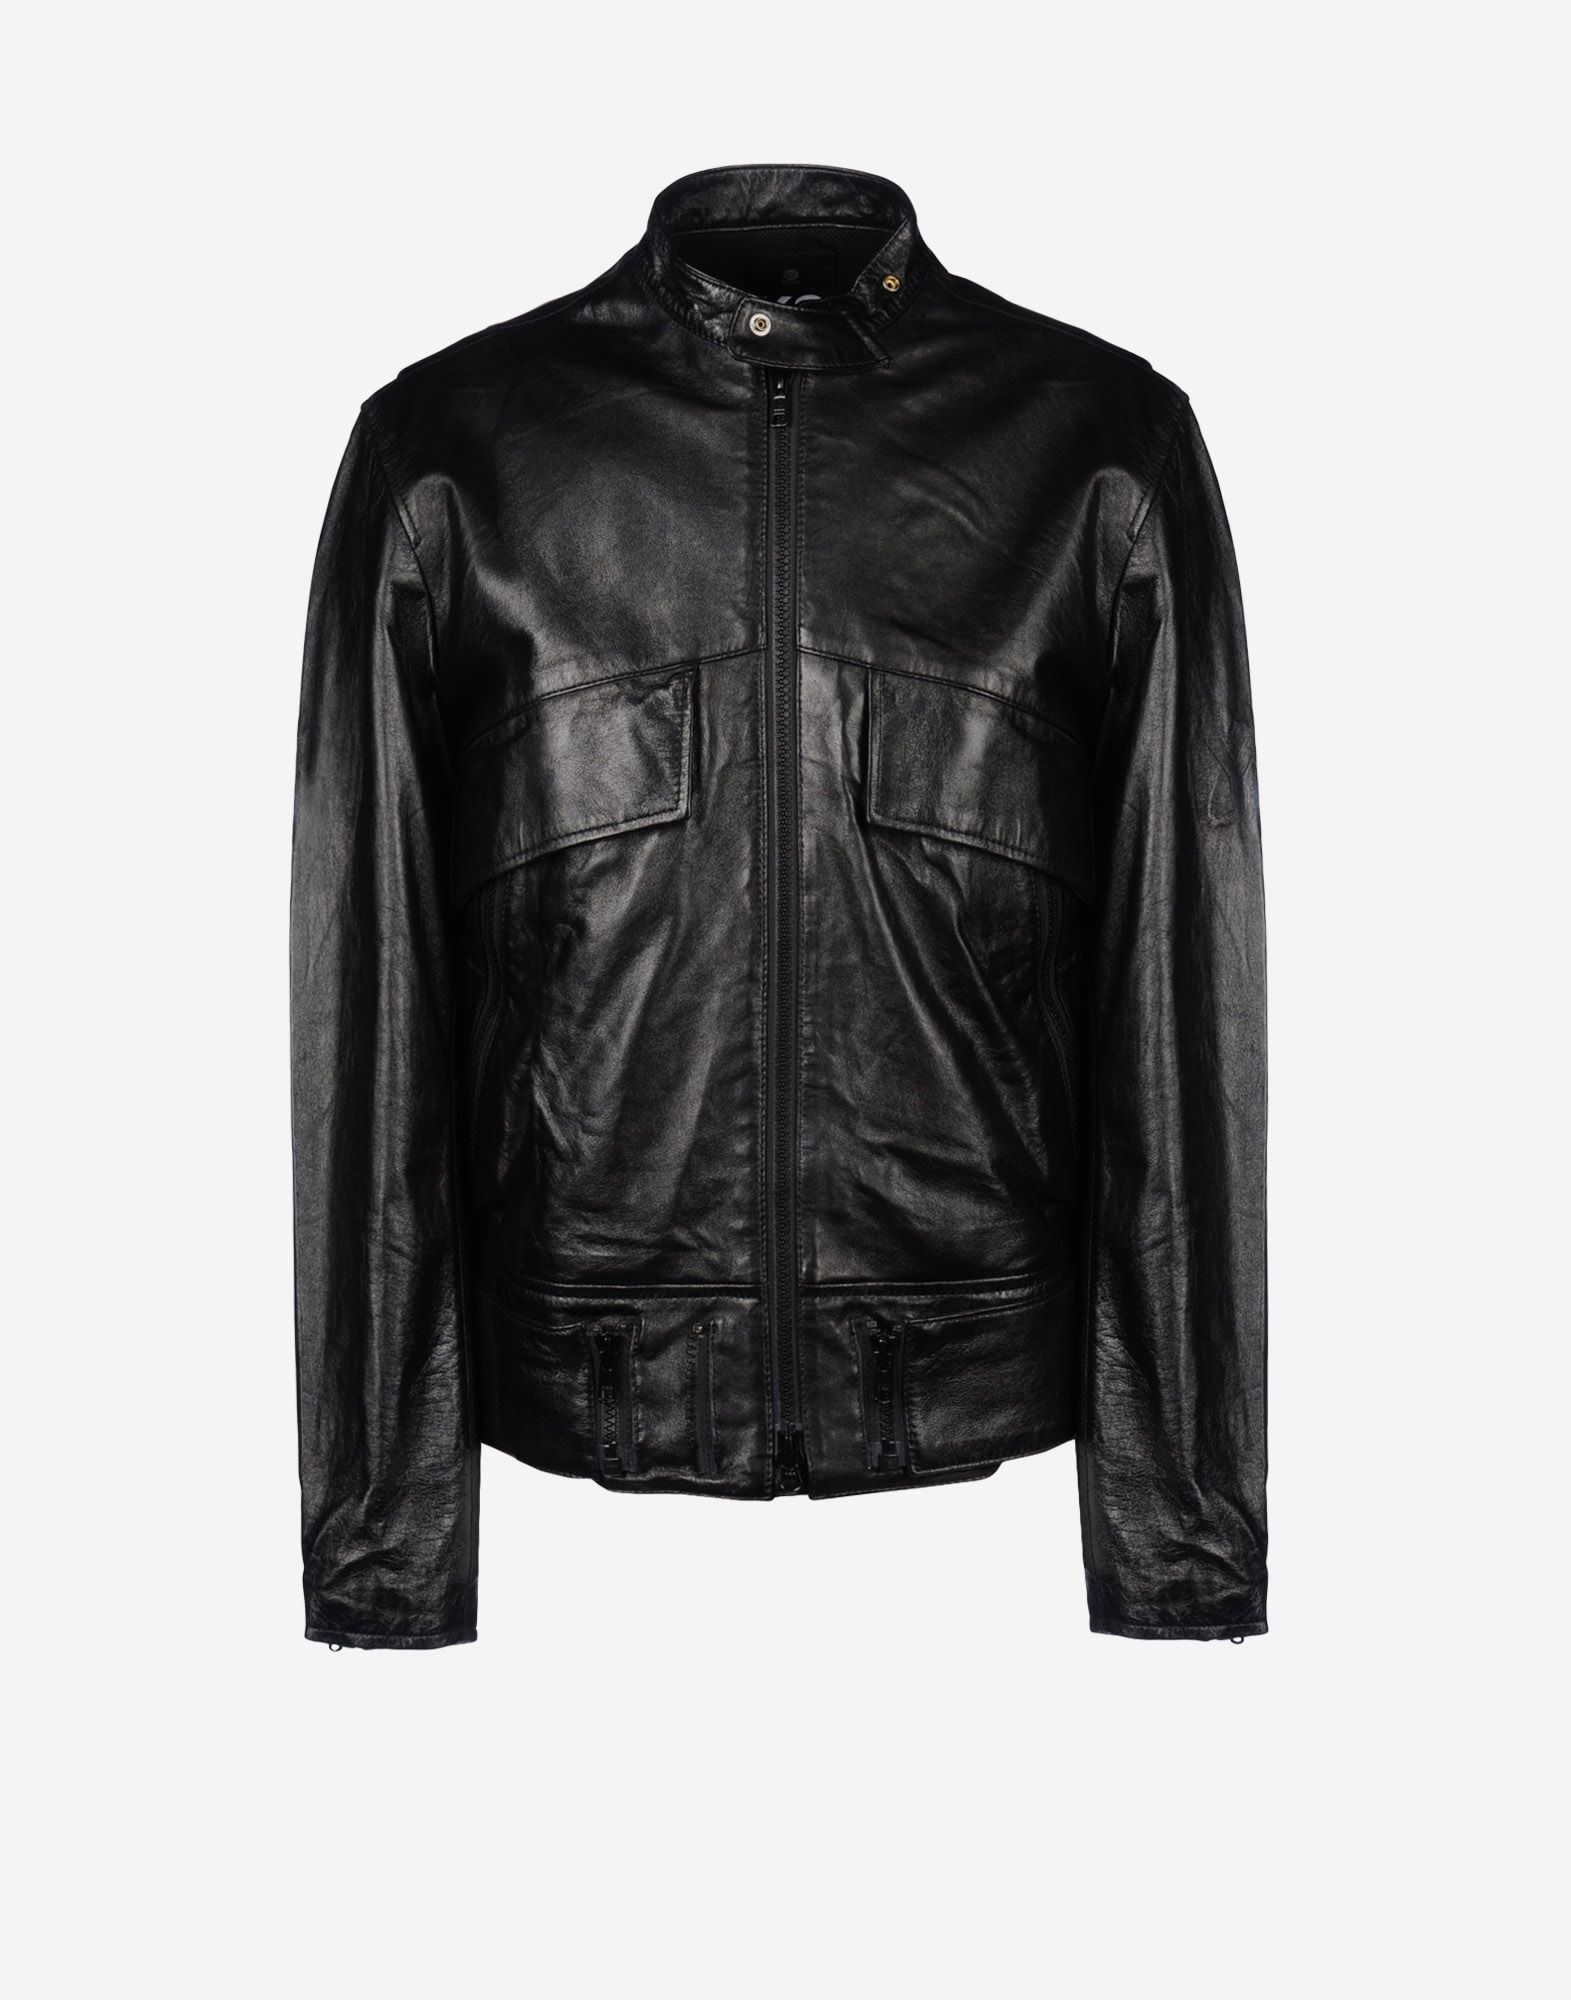 Adidas Y3 Leather Jacket - Cairoamani.com